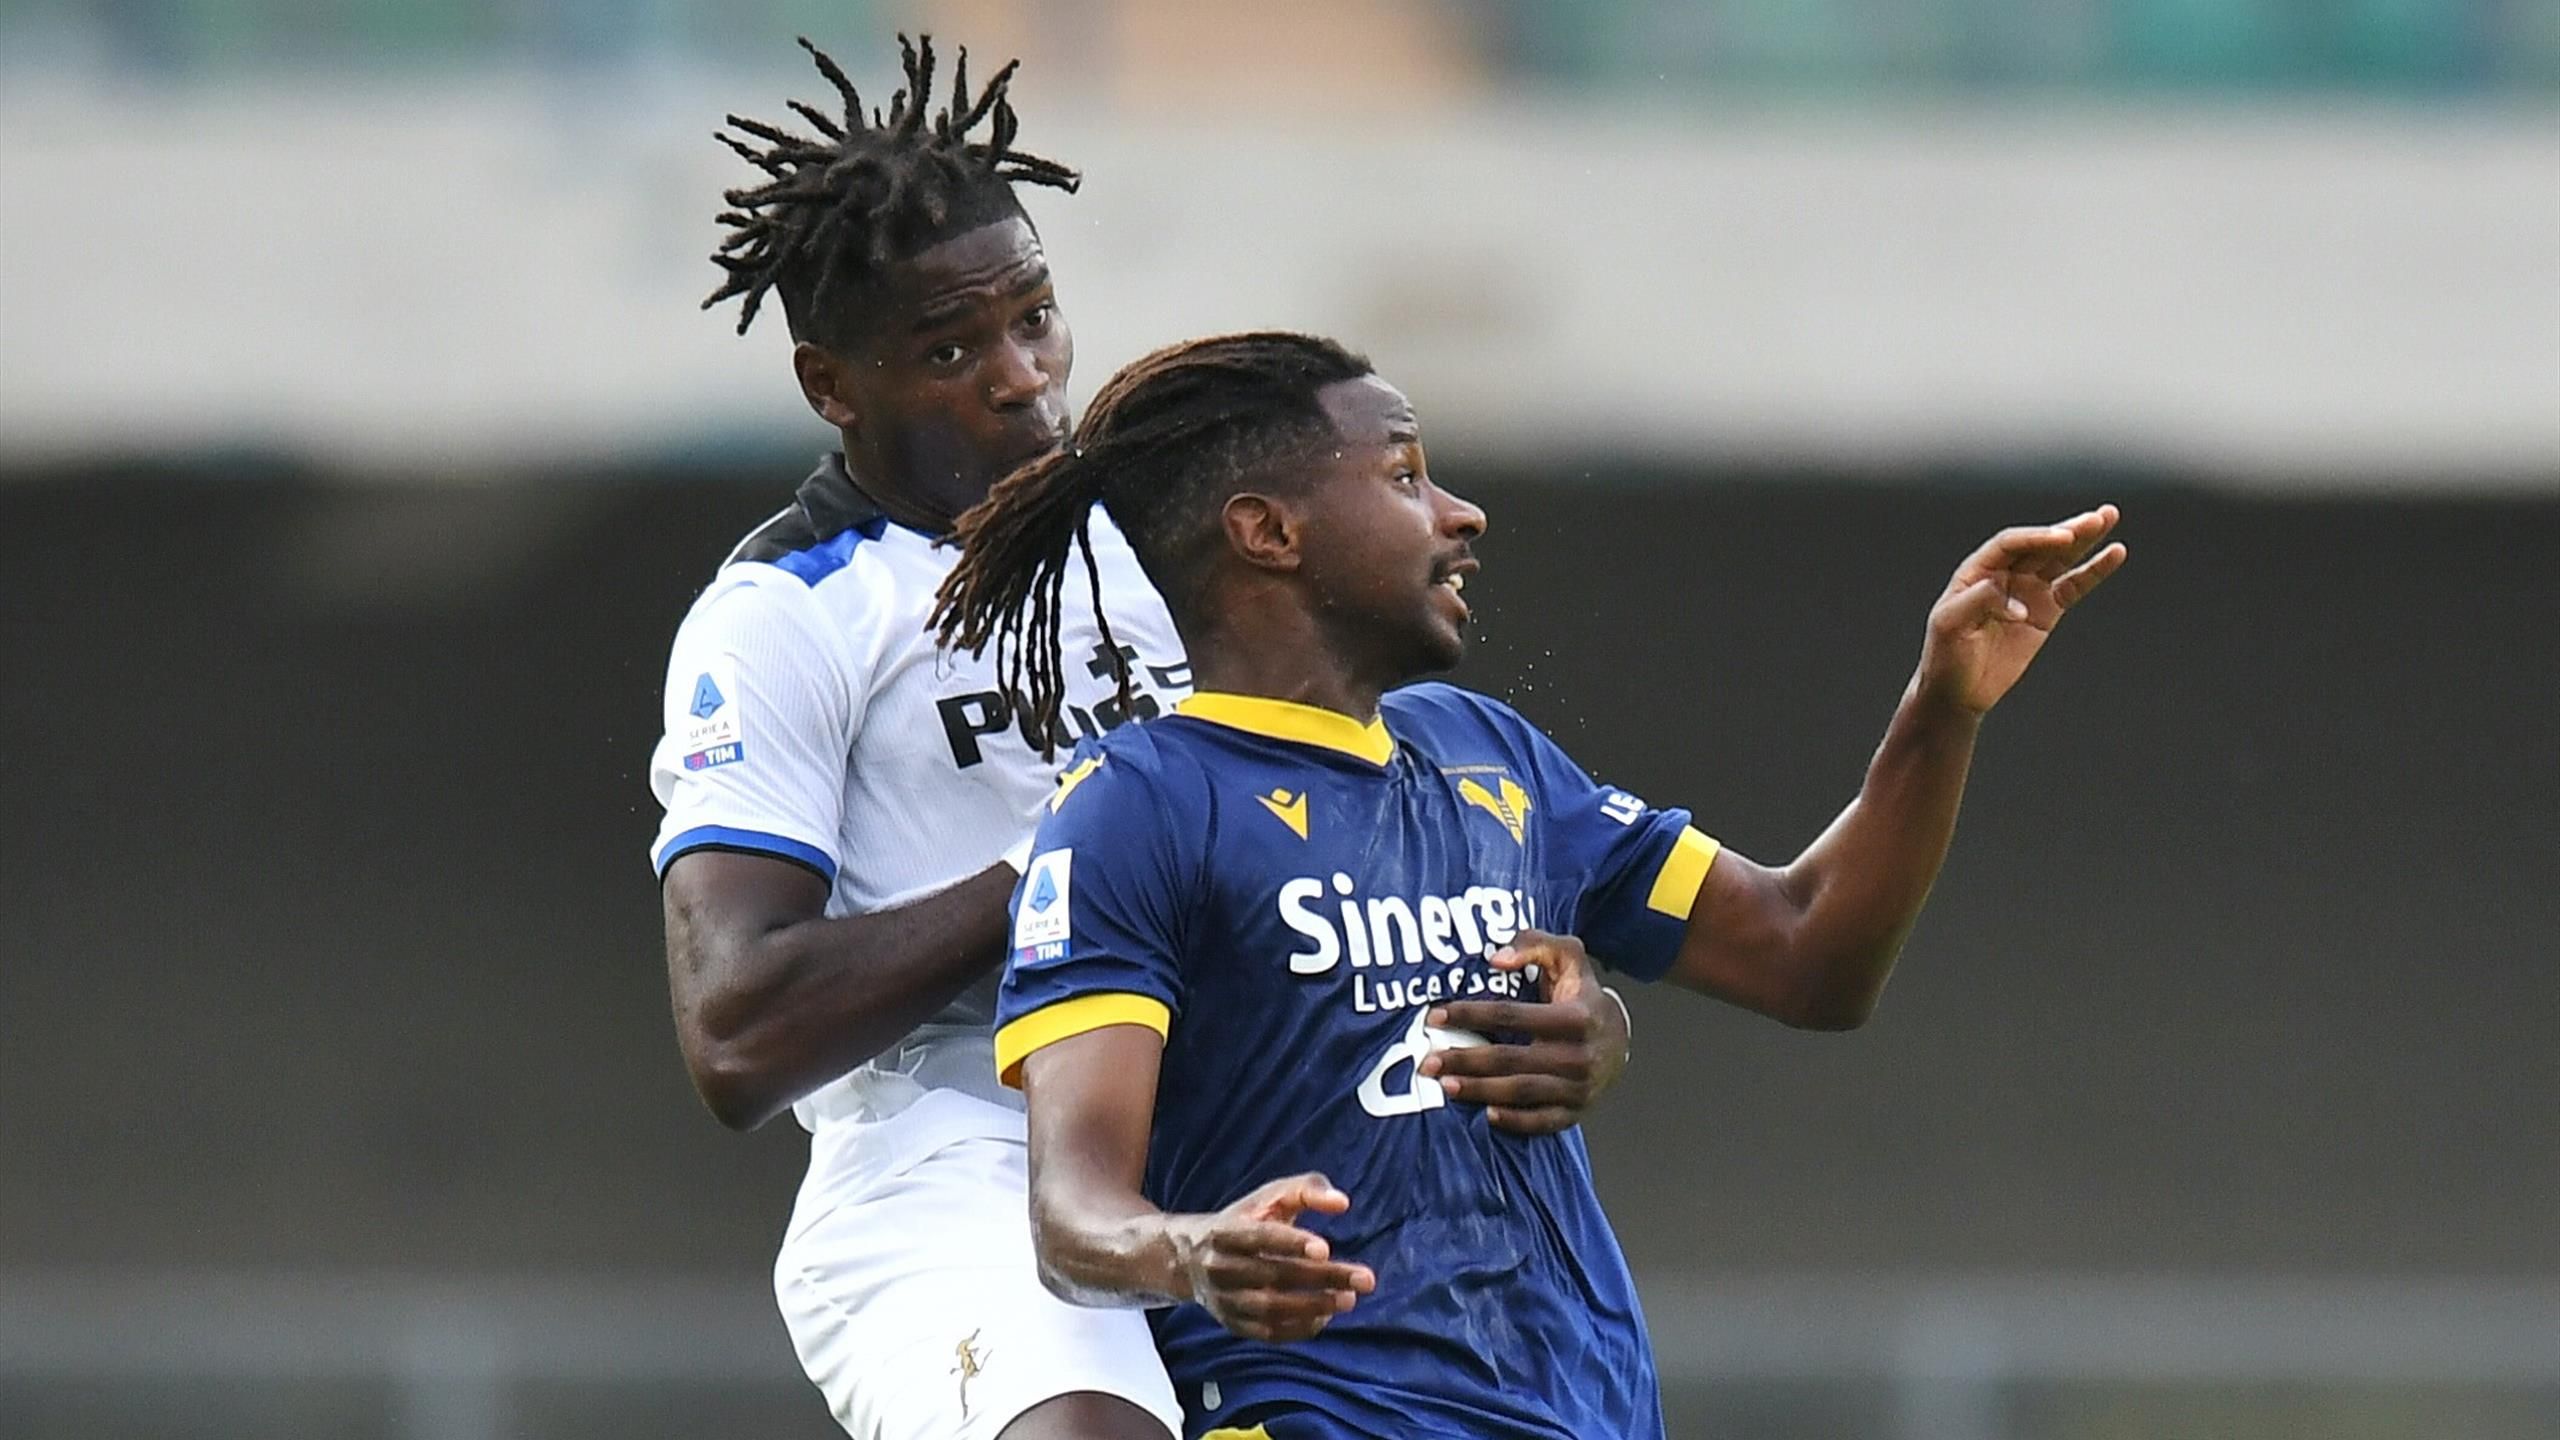 SERIE A - Verona-Atalanta 0-1, pagelle: Koopmeiners decisivo, gran prestazione di Okoli, Henry delude nell'Hellas - Eurosport